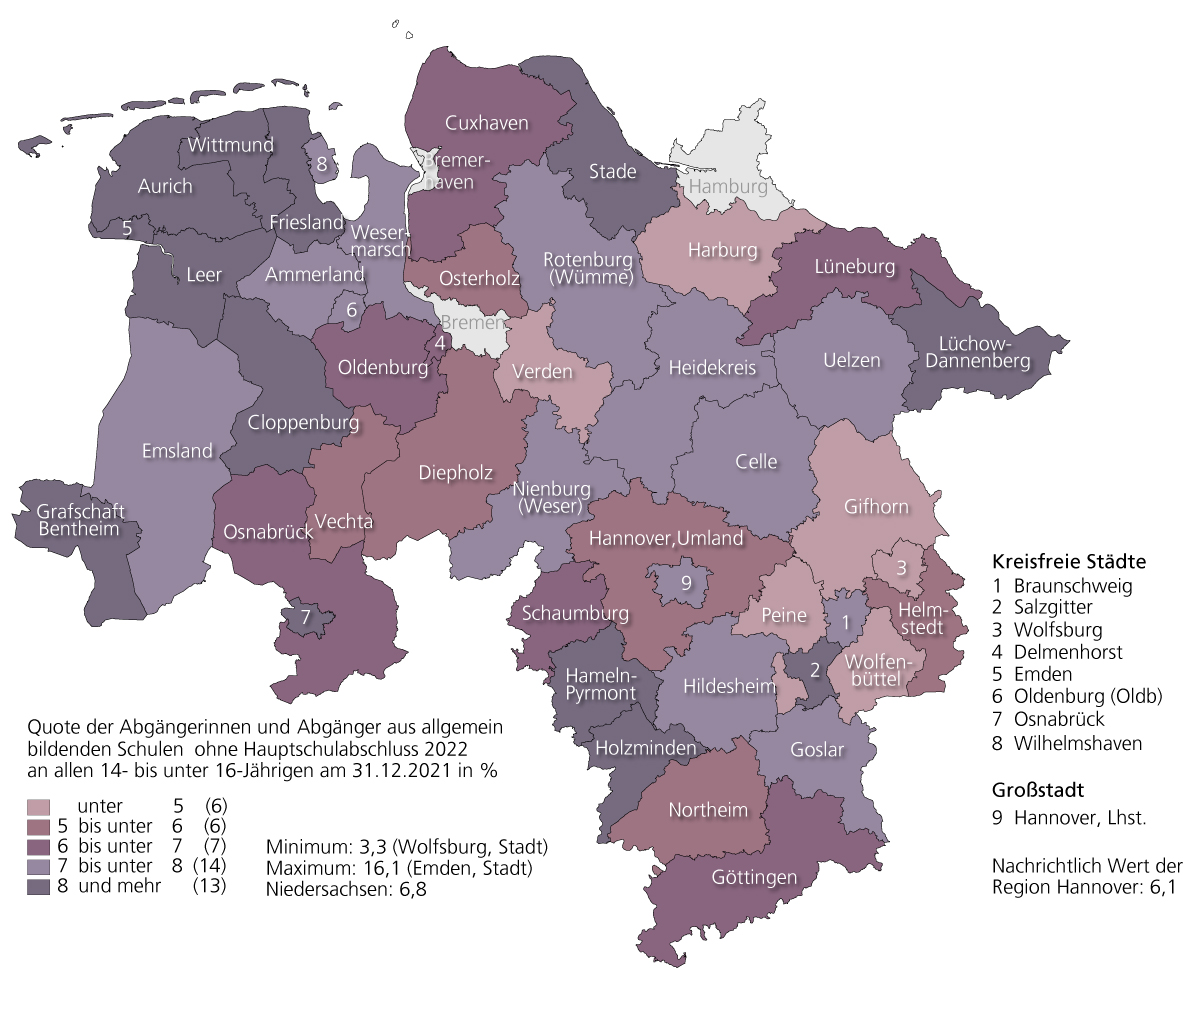 Die Spanne reichte 2022 von 3,3% in der kreisfreien Stadt Wolfsburg bis 16,1% in Emden, gefolgt von 12,2% im Landkreis Lüchow-Dannenberg.